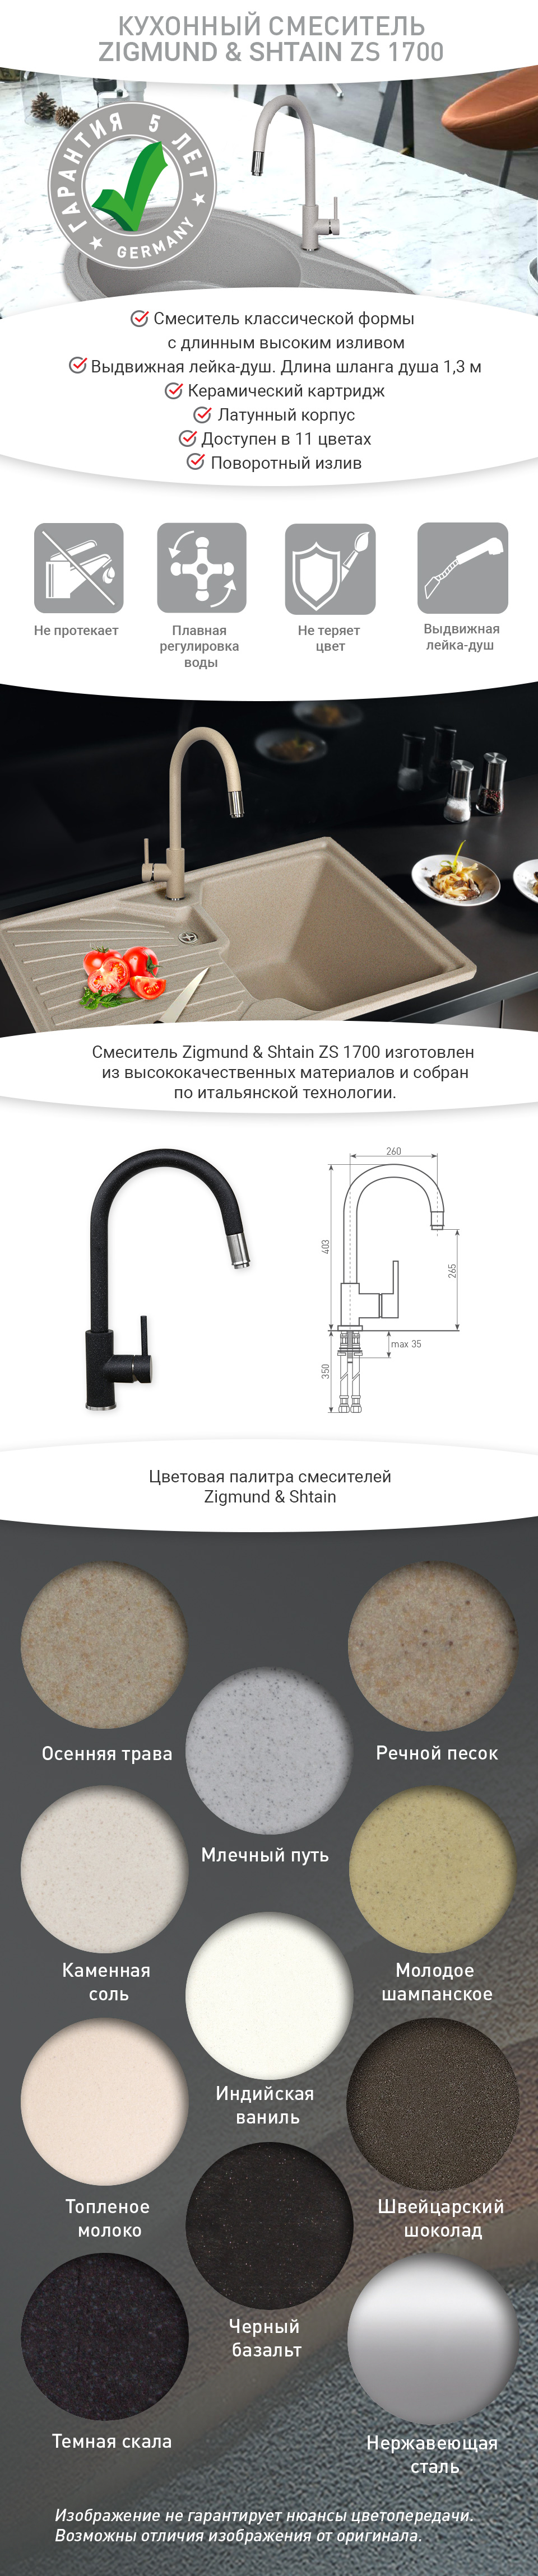 Смеситель Zigmund & Shtain ZS 1700 Нержавеющая сталь